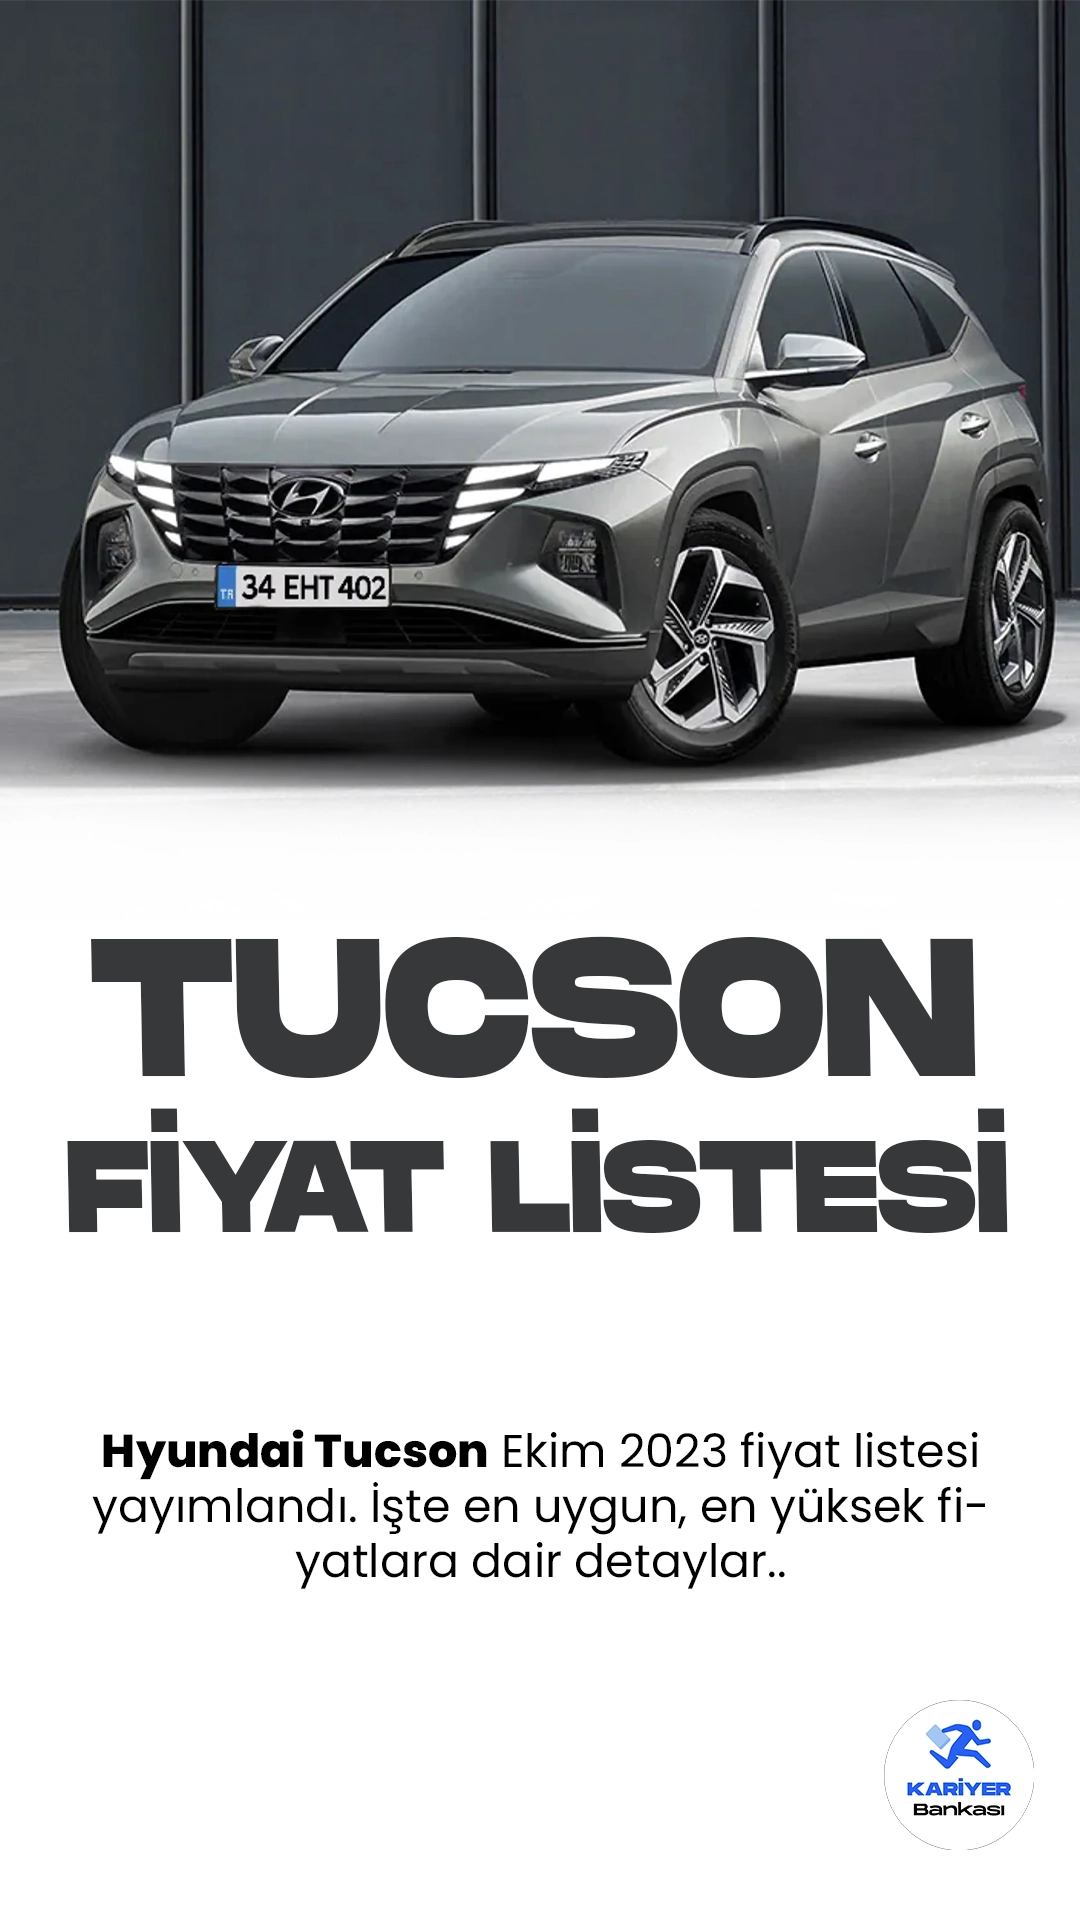 Hyundai Tucson Ekim 2023 Fiyat Listesi Yayımlandı.Hyundai, otomobil dünyasının güçlü oyuncularından biri olan Tucson modeli ile heyecan verici gelişmelere imza atmaya devam ediyor. Yeni Hyundai Tucson, zarif tasarımı ve çarpıcı özellikleri ile dikkat çekiyor.